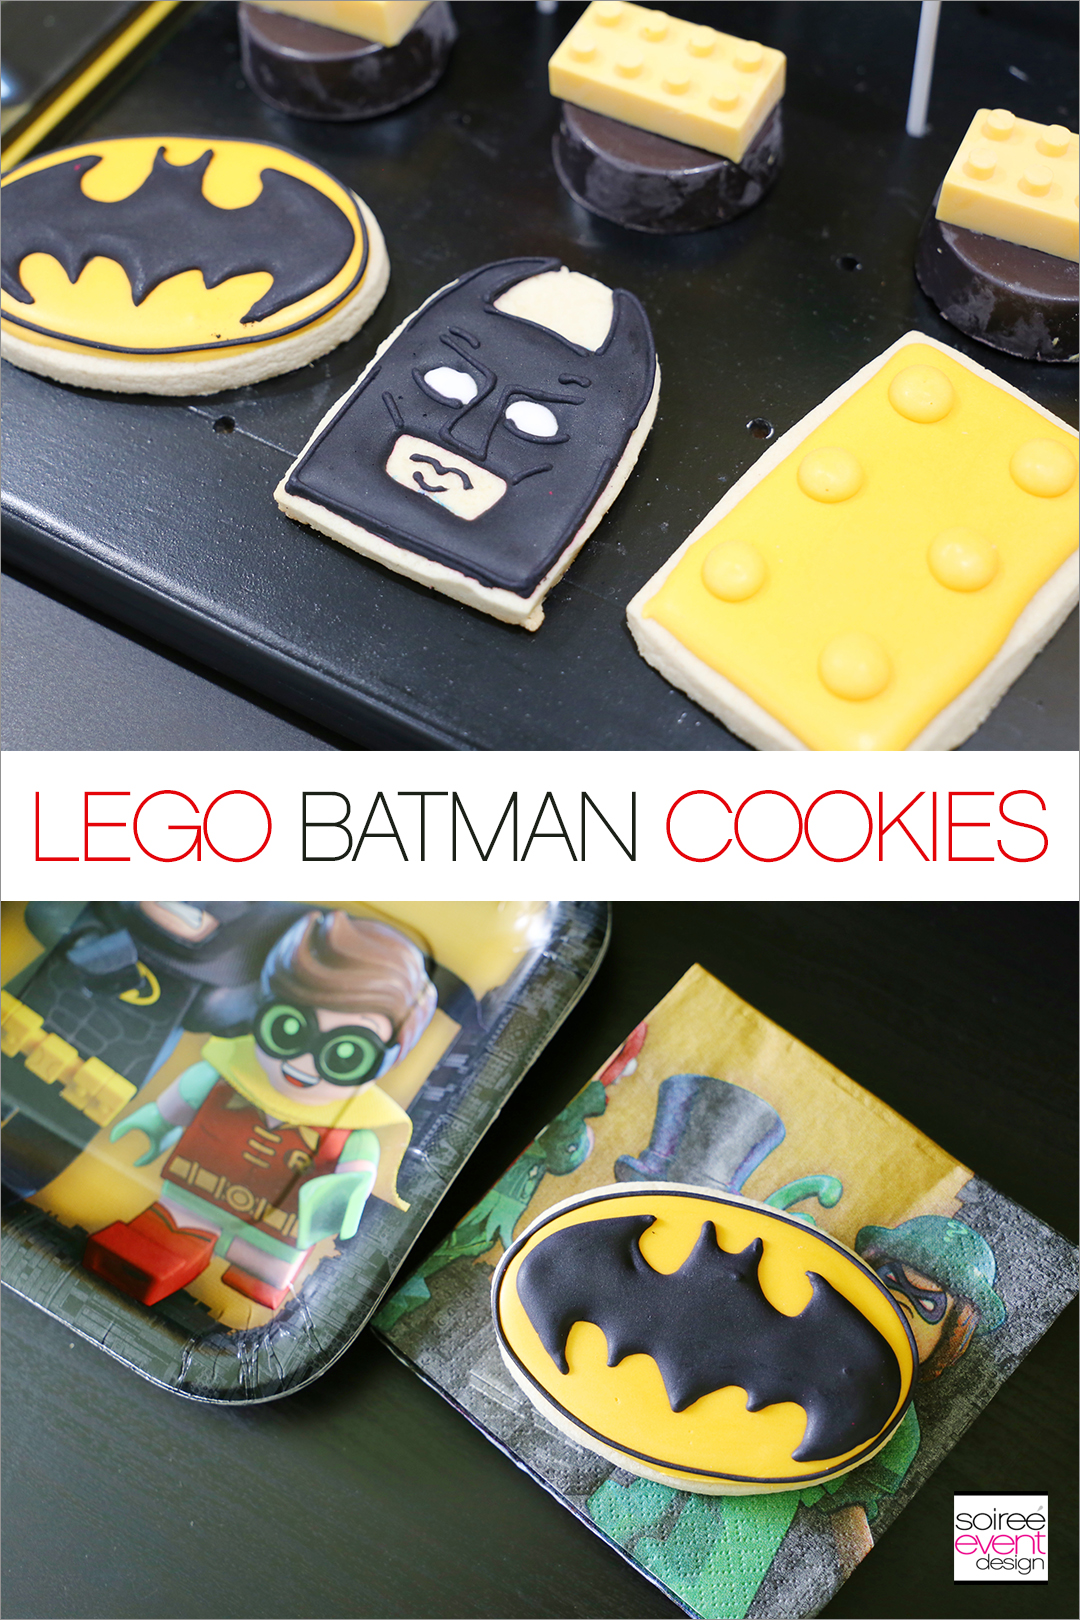 Lego Batman Party Ideas - Lego Batman Cookies